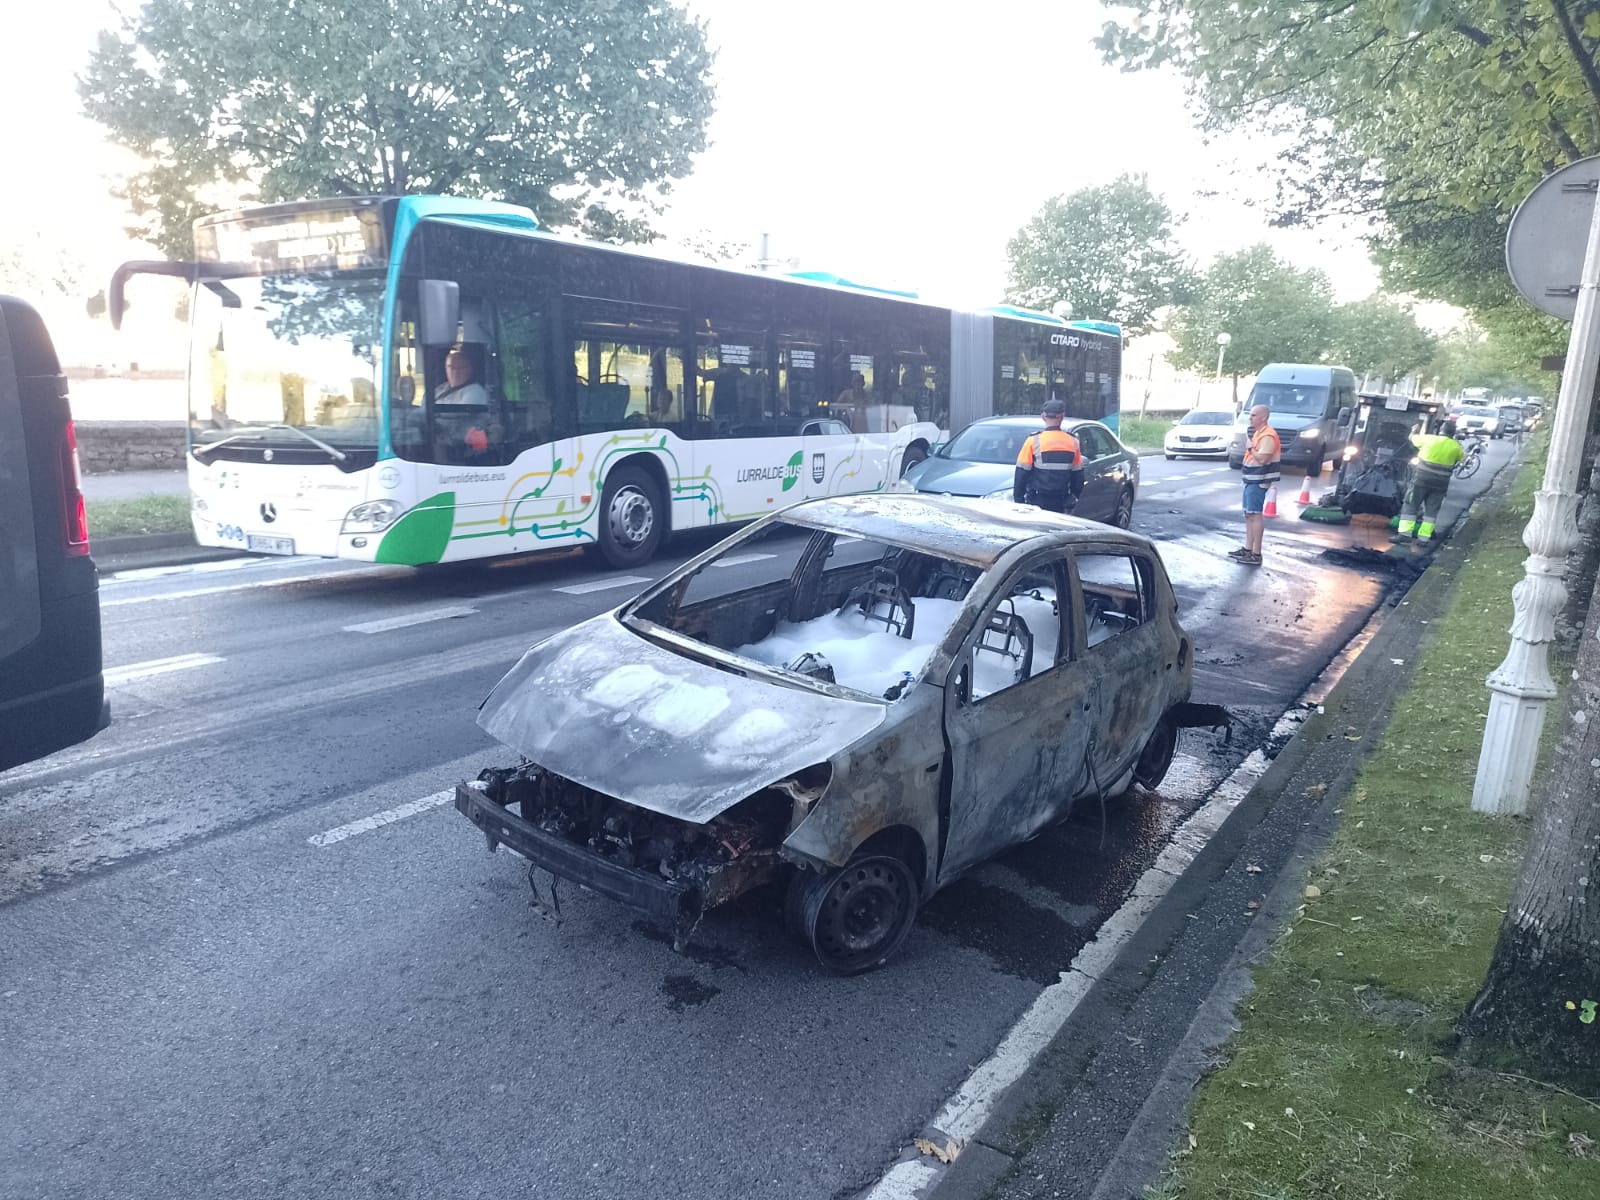 WhatsApp Image 2023 09 28 at 18.01.18 - Un incendio calcina un vehículo cuando circulaba por el centro de Donostia